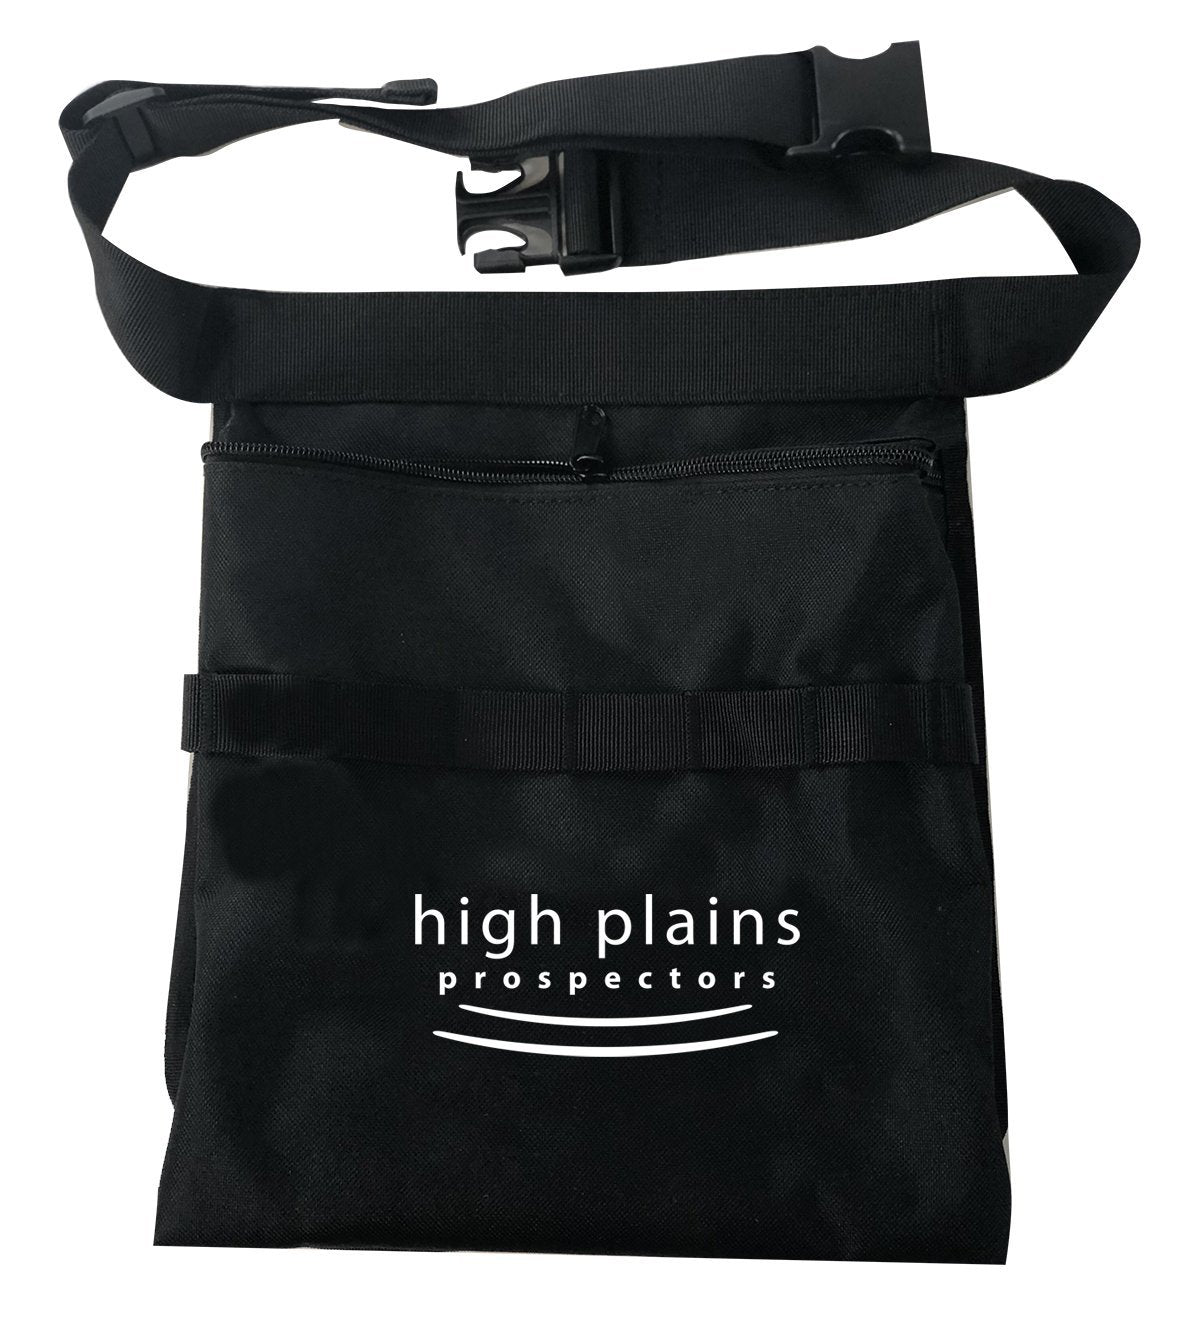 High Plains Private Label Gear for Minelab Metal Detectors High Plains Prospectors 